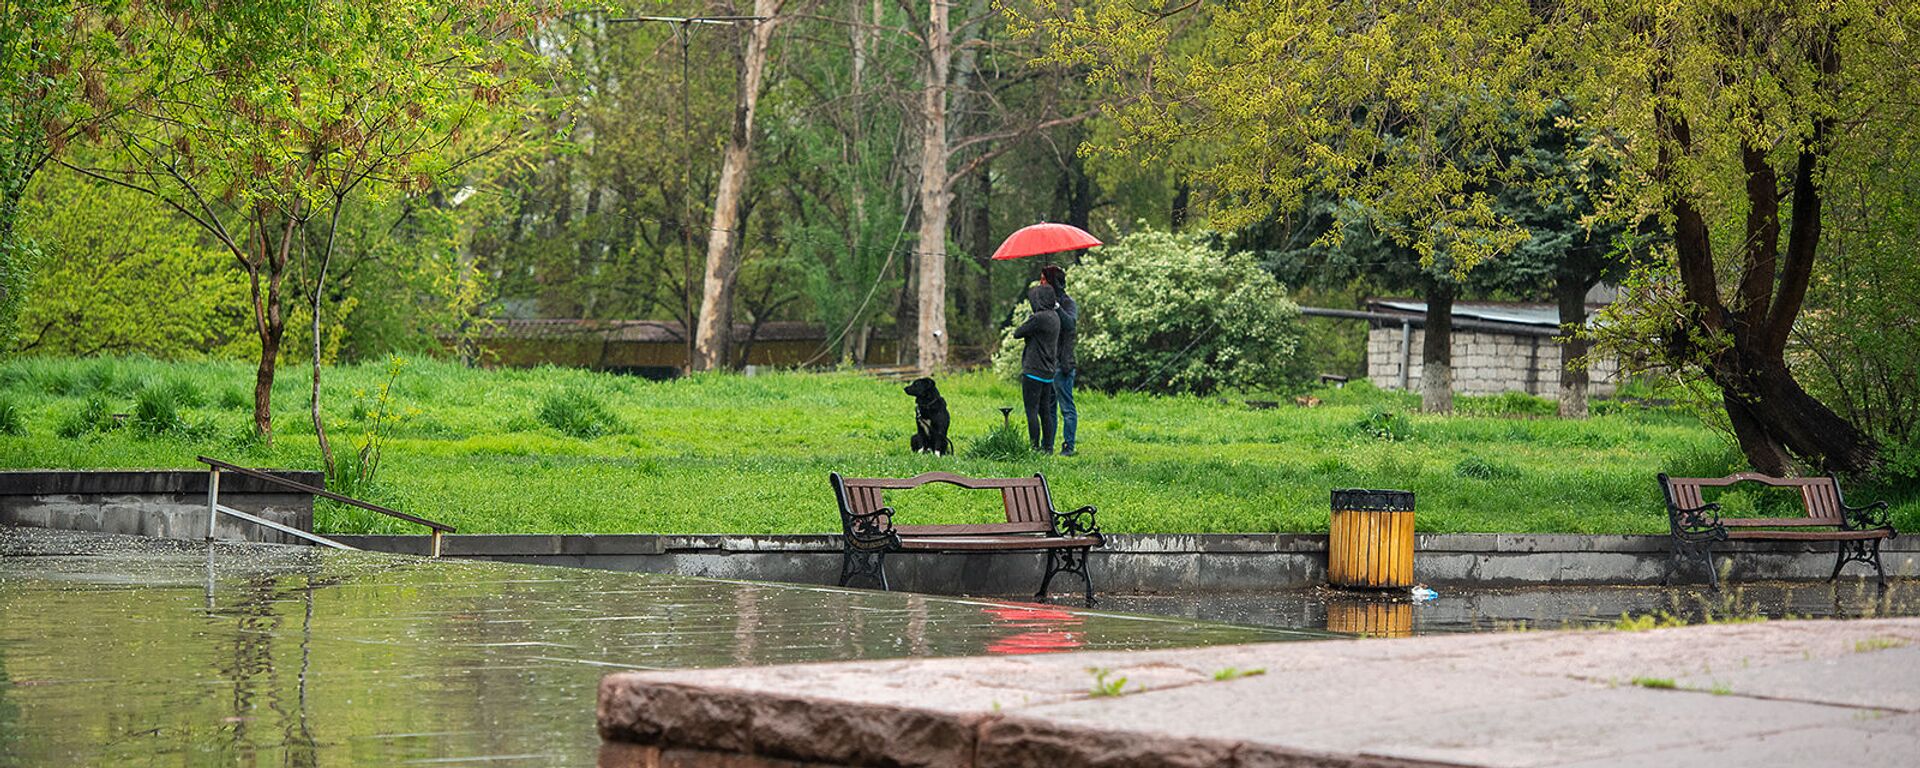 Молодые люди выгуливают собаку в дождливый день - Sputnik Արմենիա, 1920, 19.04.2021